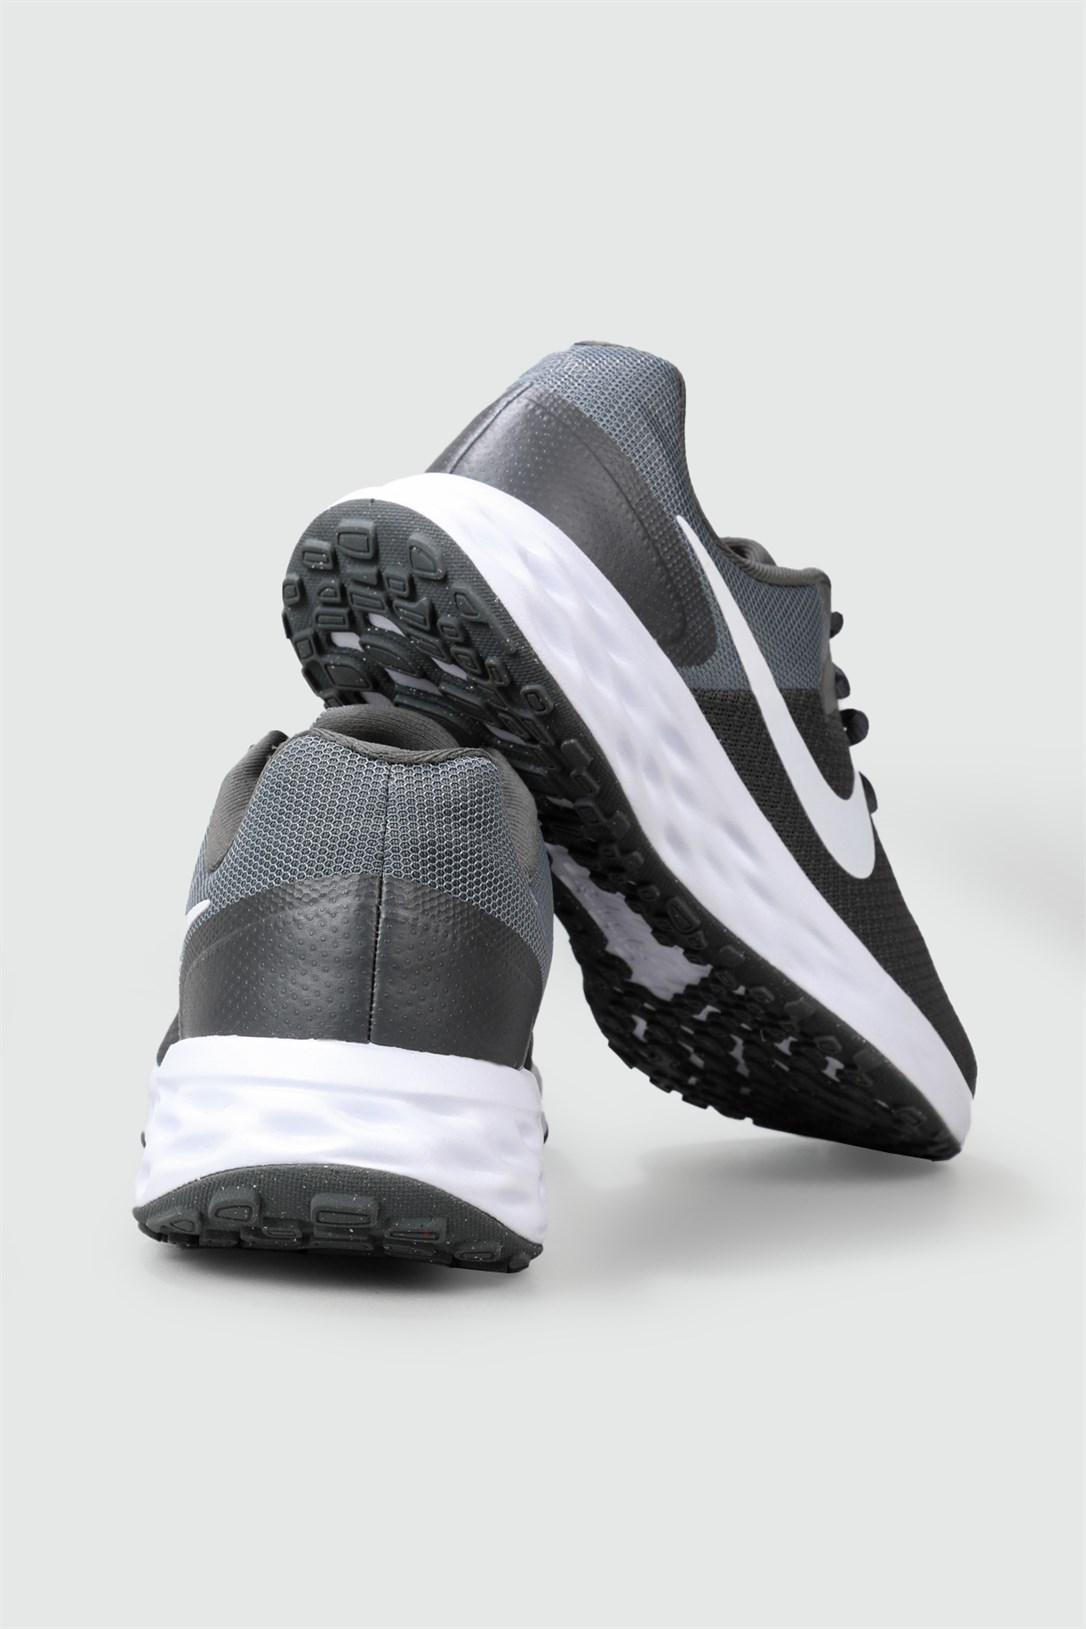 NikeNefes Alır Günlük Rahat Koşu Yürüyüş Koyu Gri Erkek Spor Ayakkabı  DC3728-004